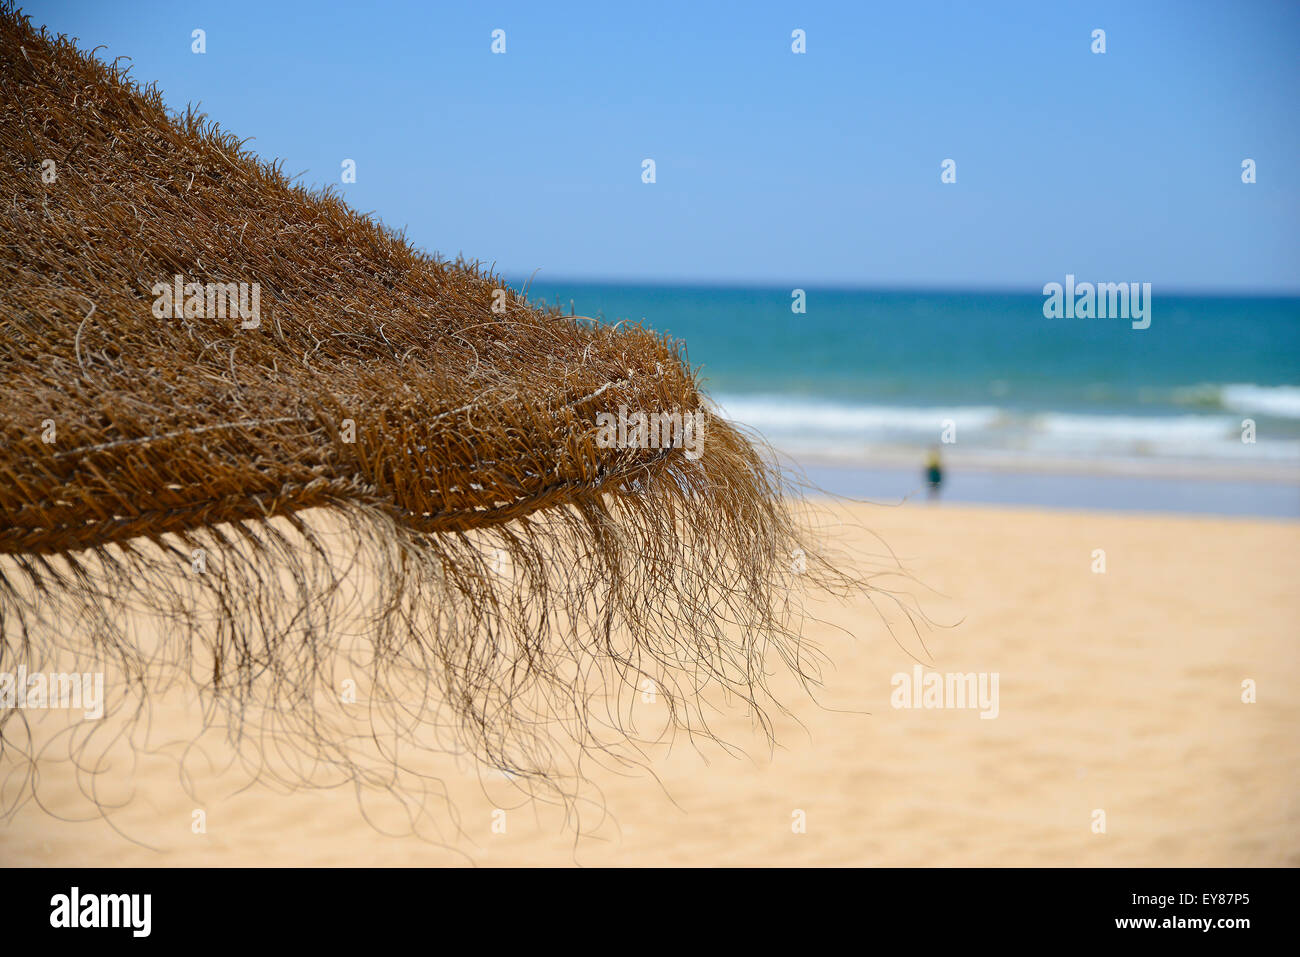 Signora sulla spiaggia di sabbia dorata con cielo blu e blu acqua Foto Stock